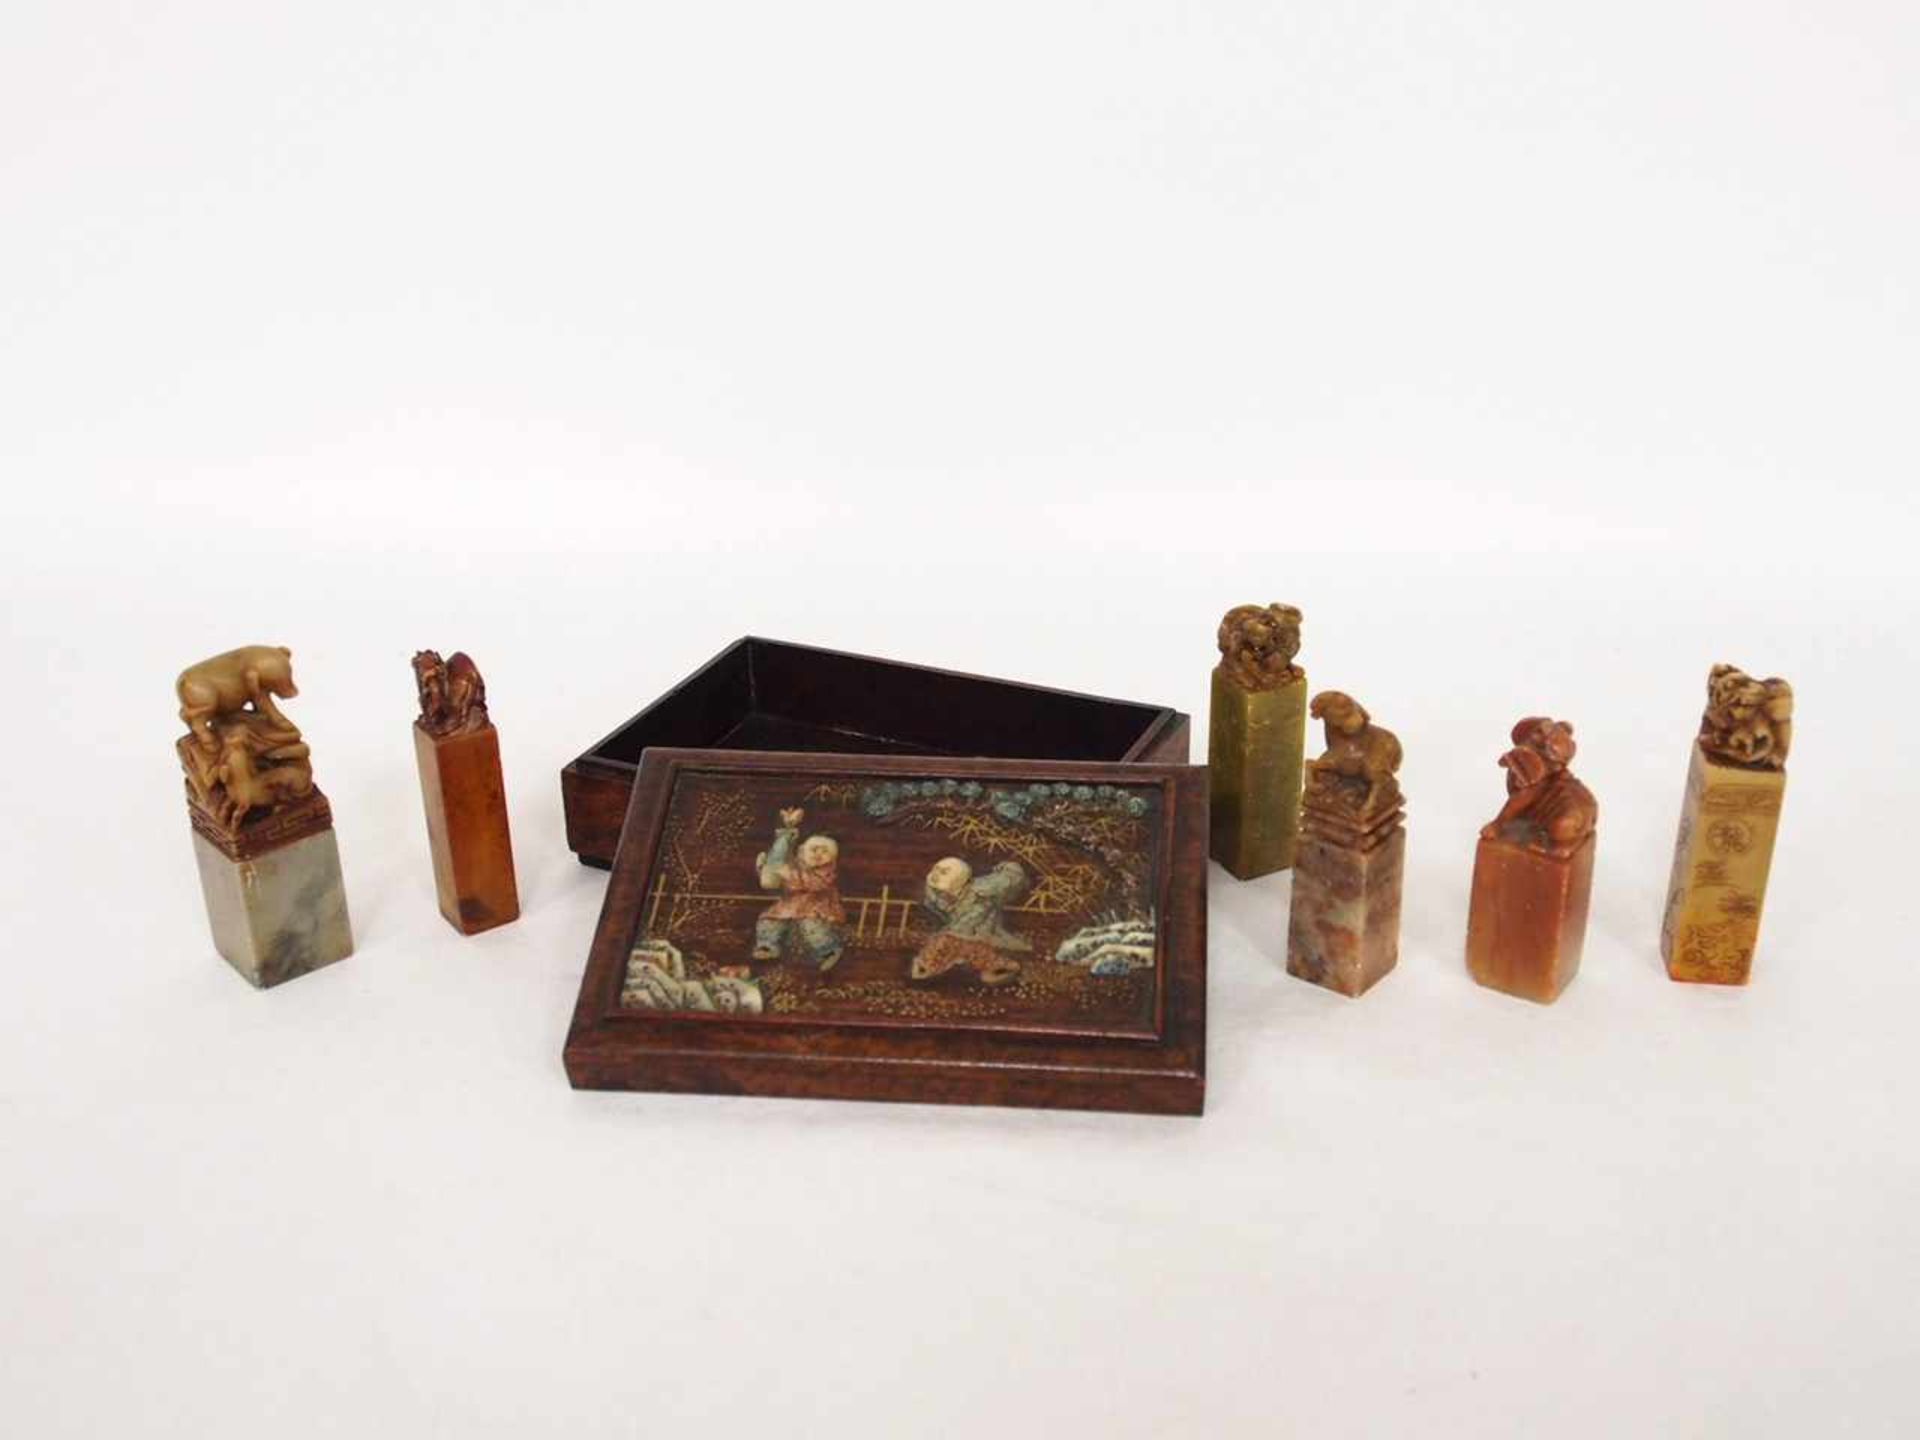 Holzkasten mit 6 SiegelnEdelholz, Deckel mit Steineinlagen (Spielende Kinder), 4 x 13,5 x 9 cm;